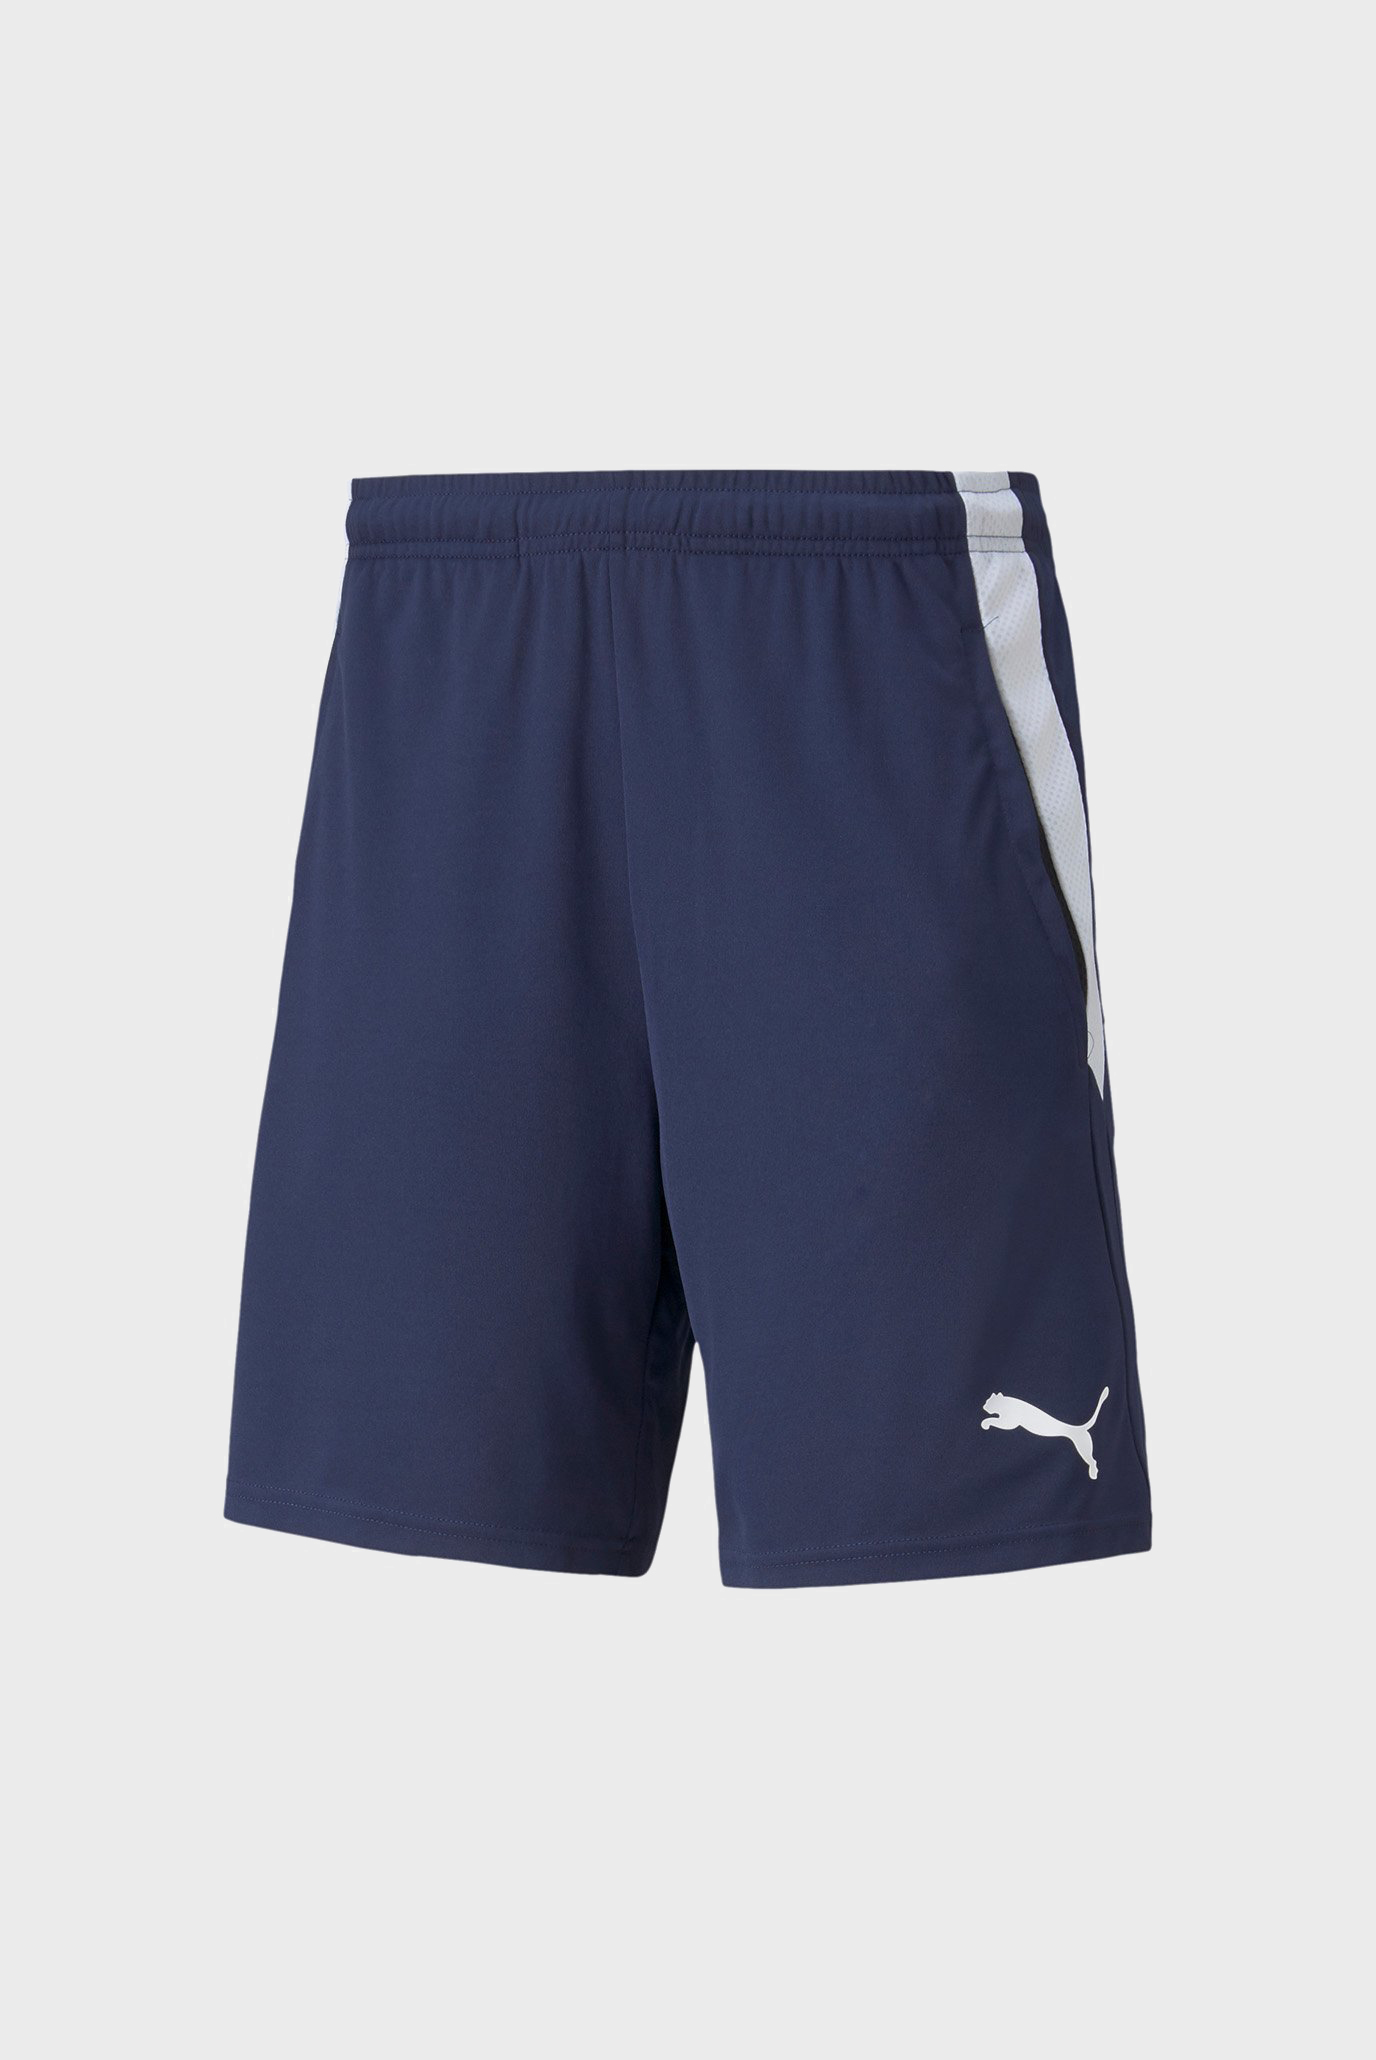 Чоловічі темно-сині шорти teamLIGA Training Men's Football Shorts 2 1